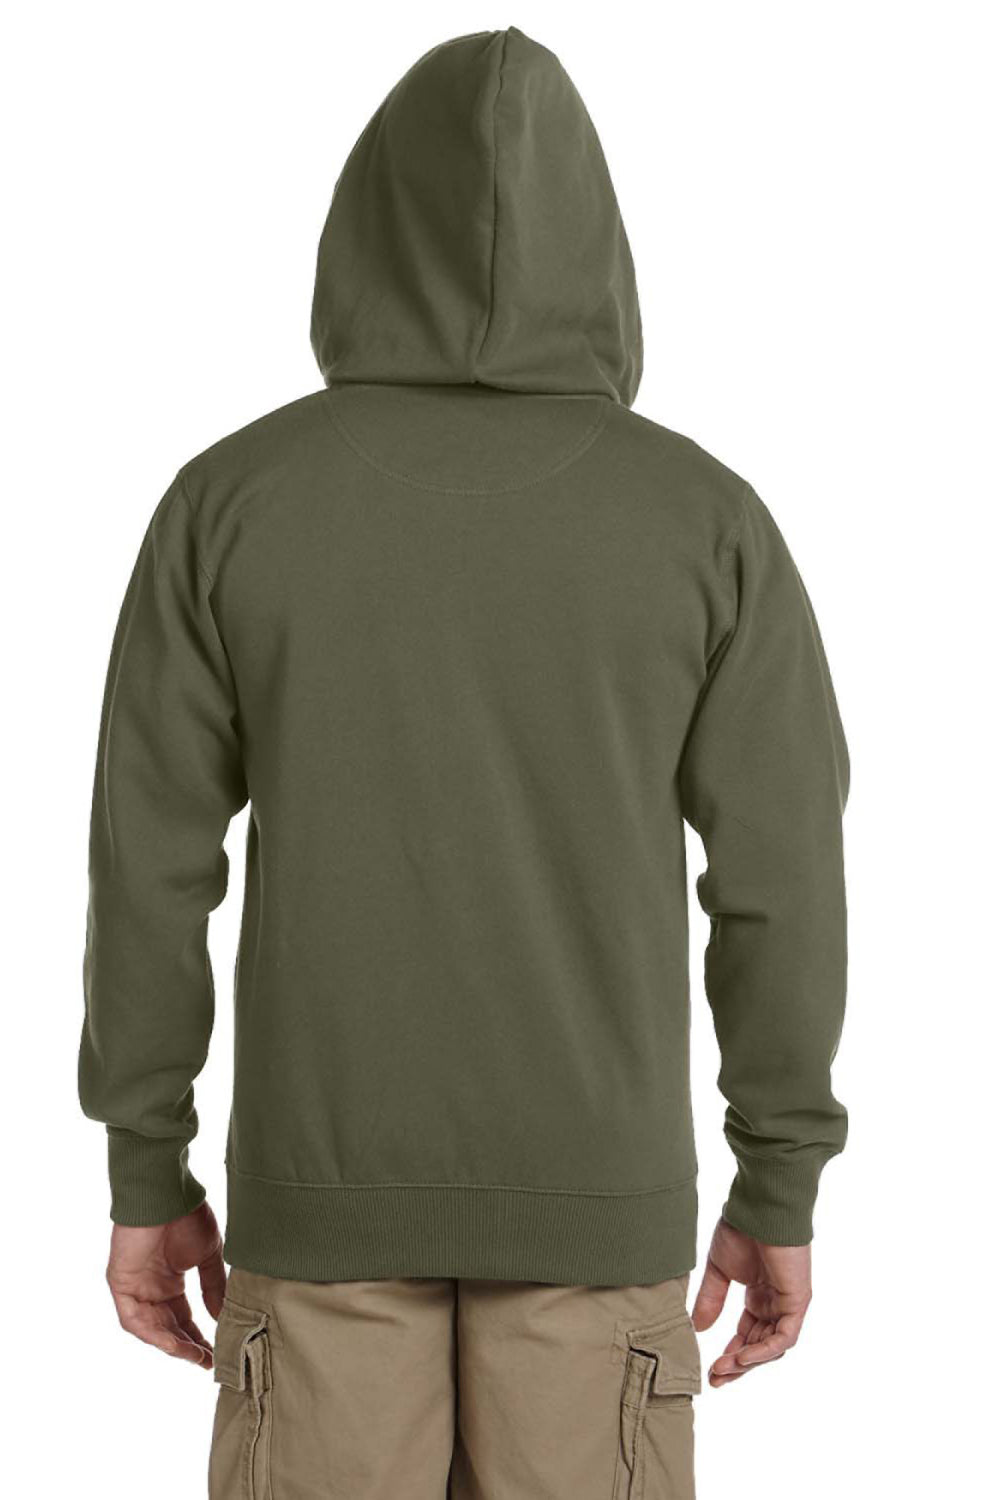 Econscious EC5650 Mens Full Zip Hooded Sweatshirt Hoodie Jungle Green Back